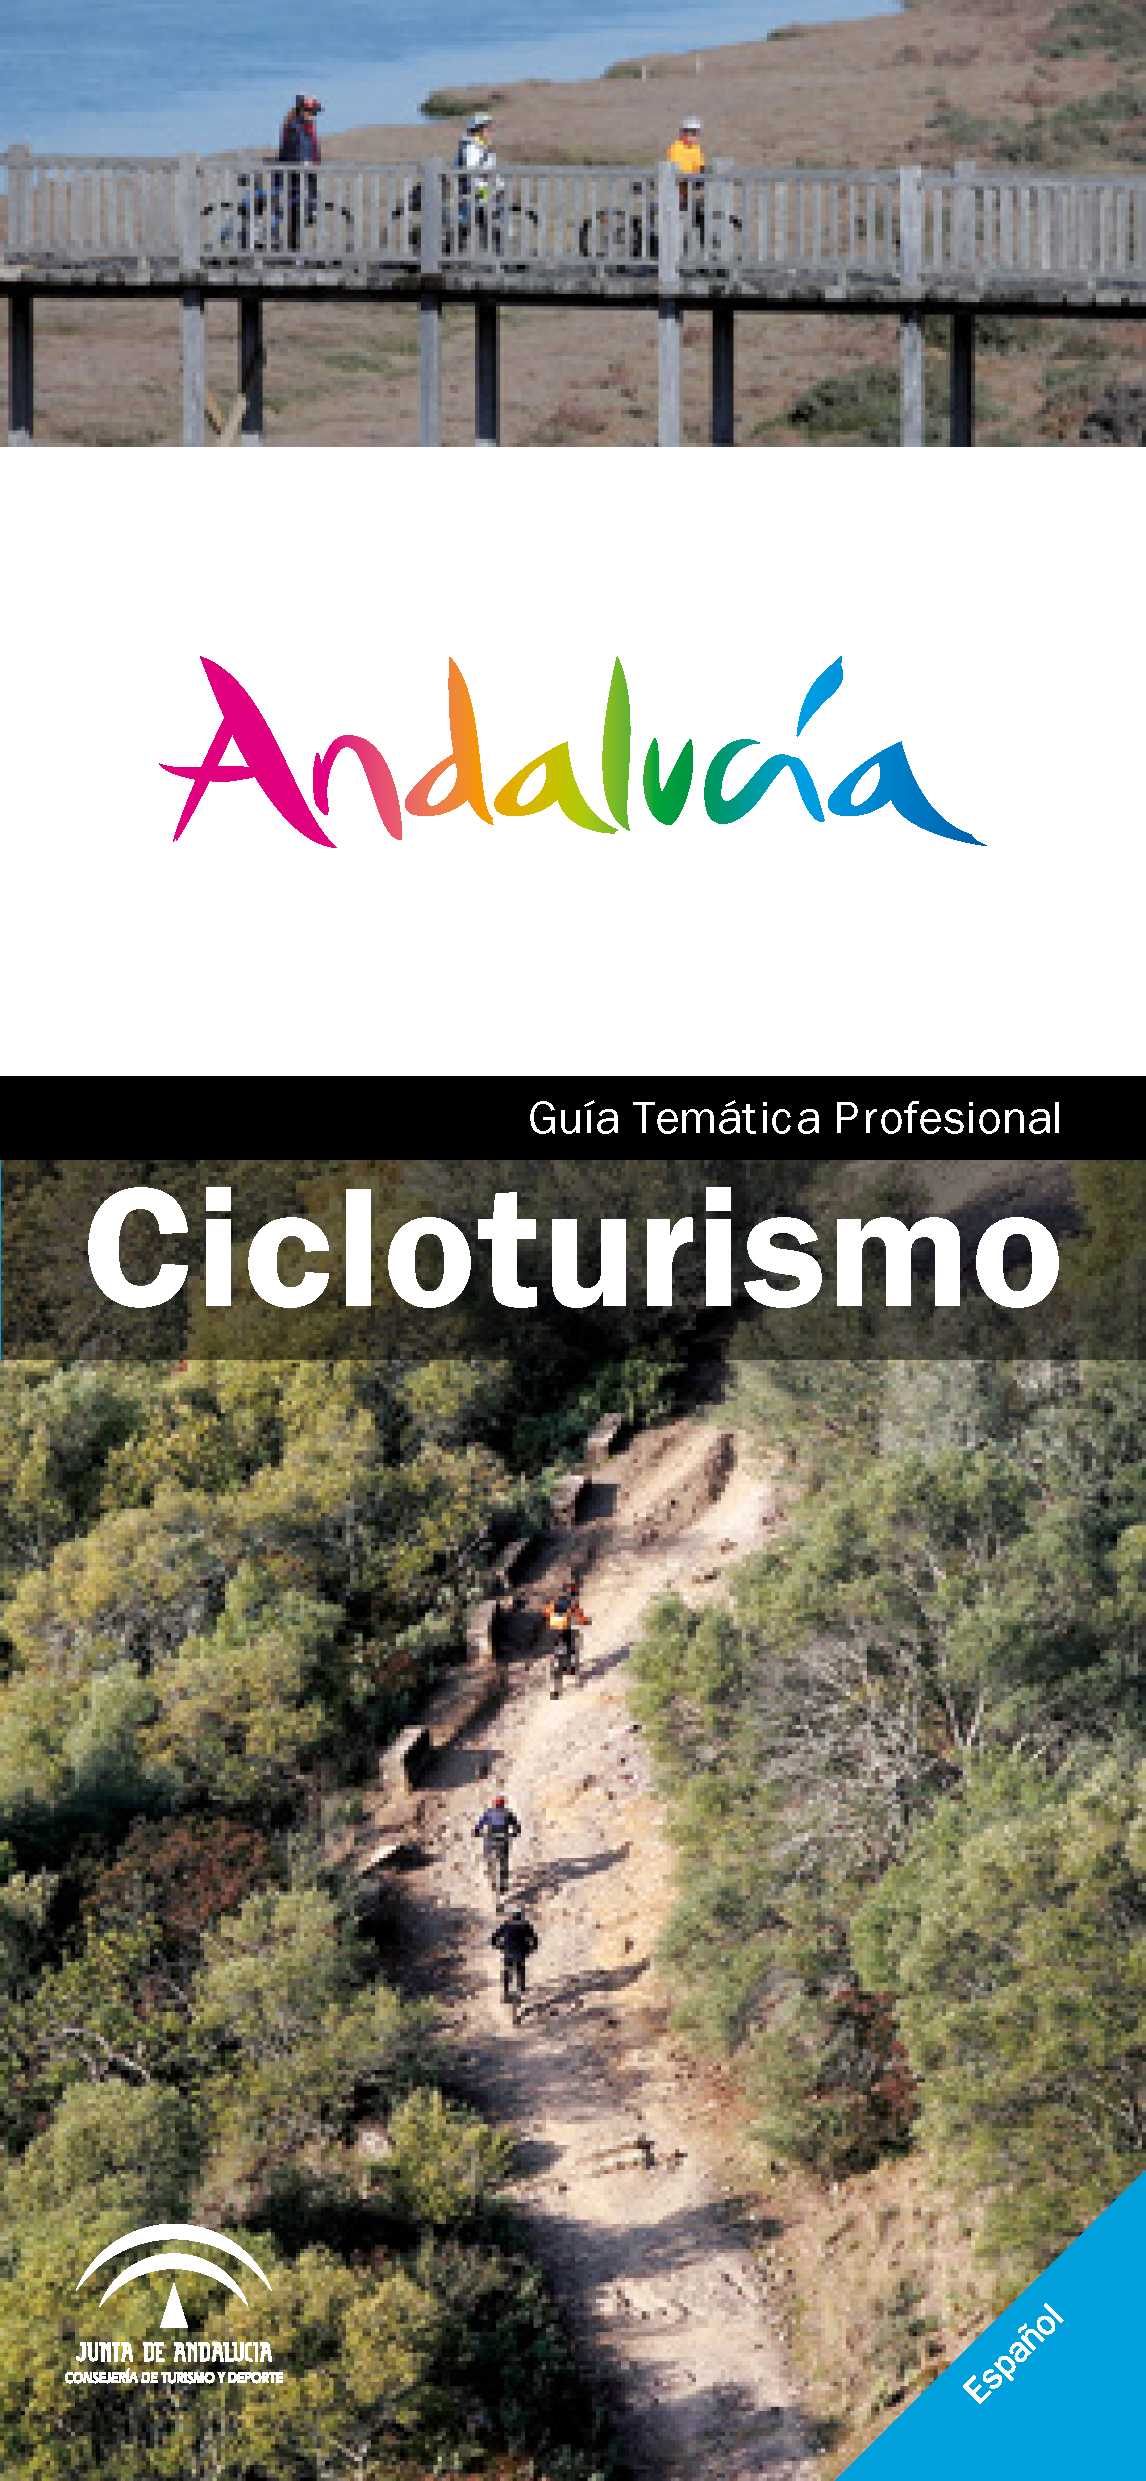 Guia_Cicloturismo_PORTADA.jpg